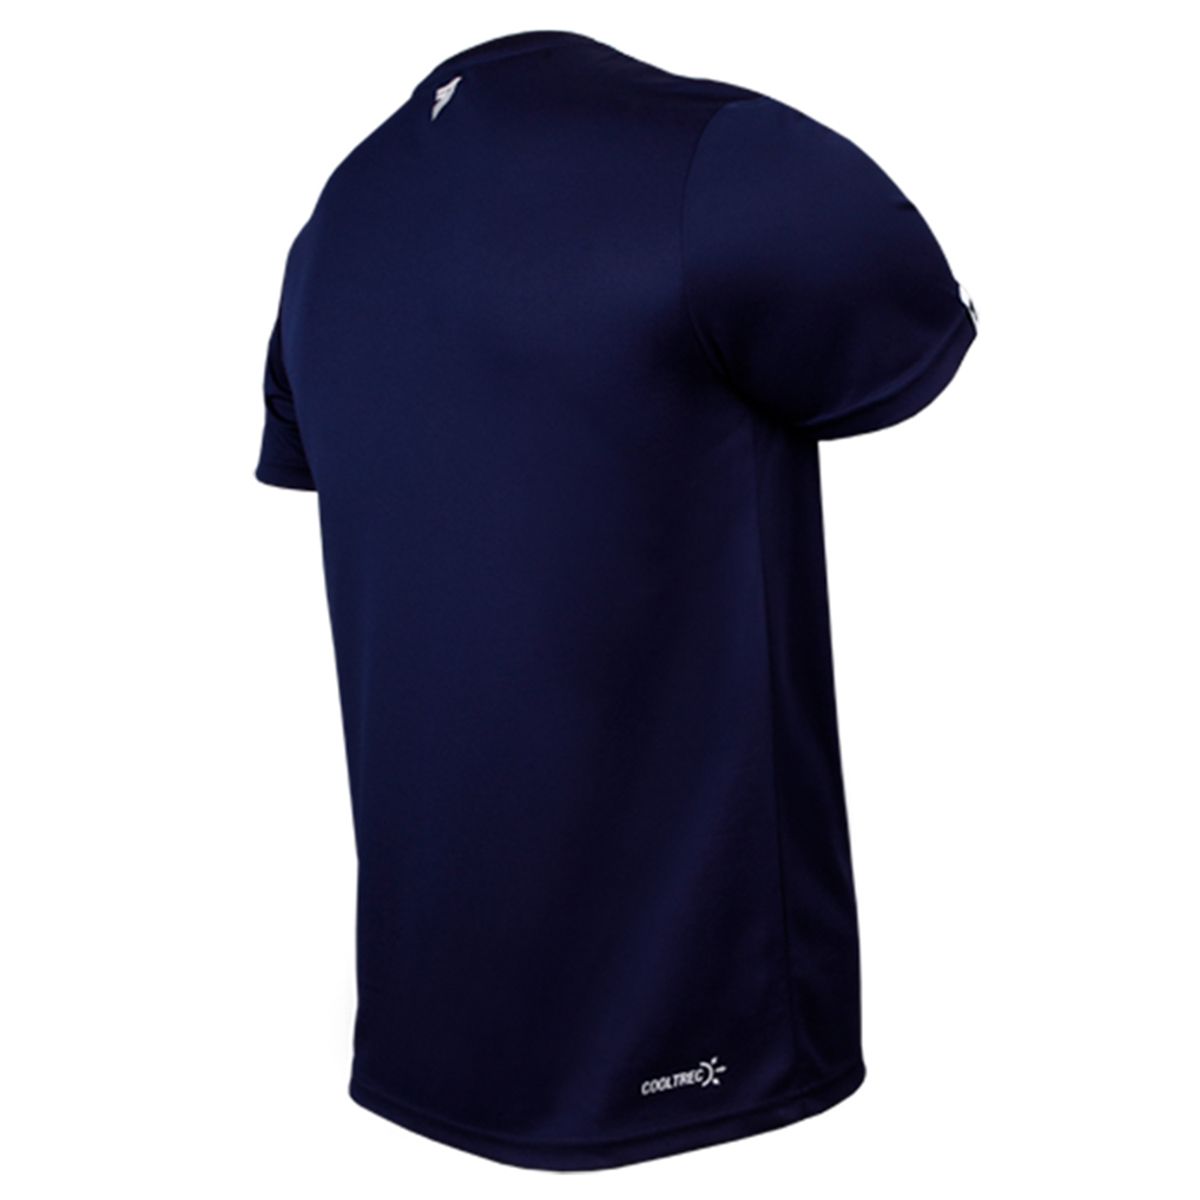 تی شرت ورزشی مردانه ترِک ویر مدل Cooltrec 01 Navy -  - 5